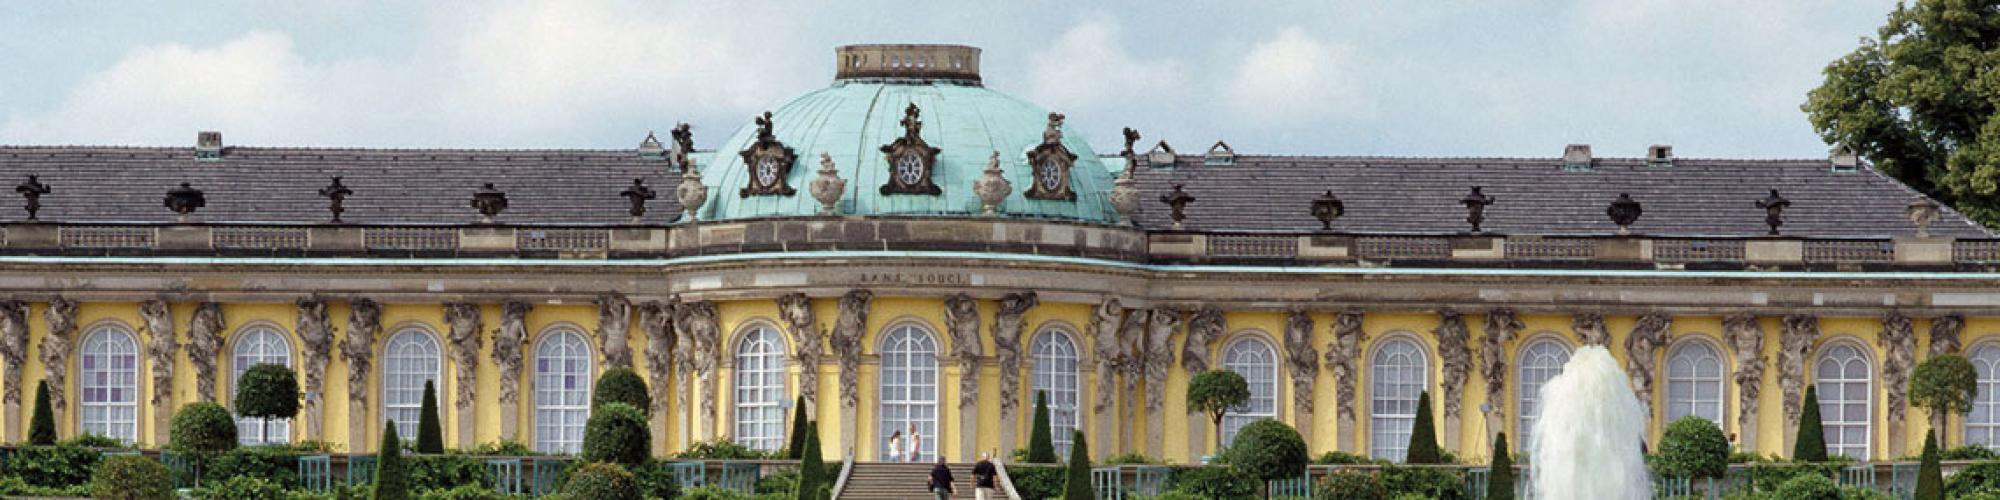 Stiftung Preußische Schlösser und Gärten Berlin-Brandenburg